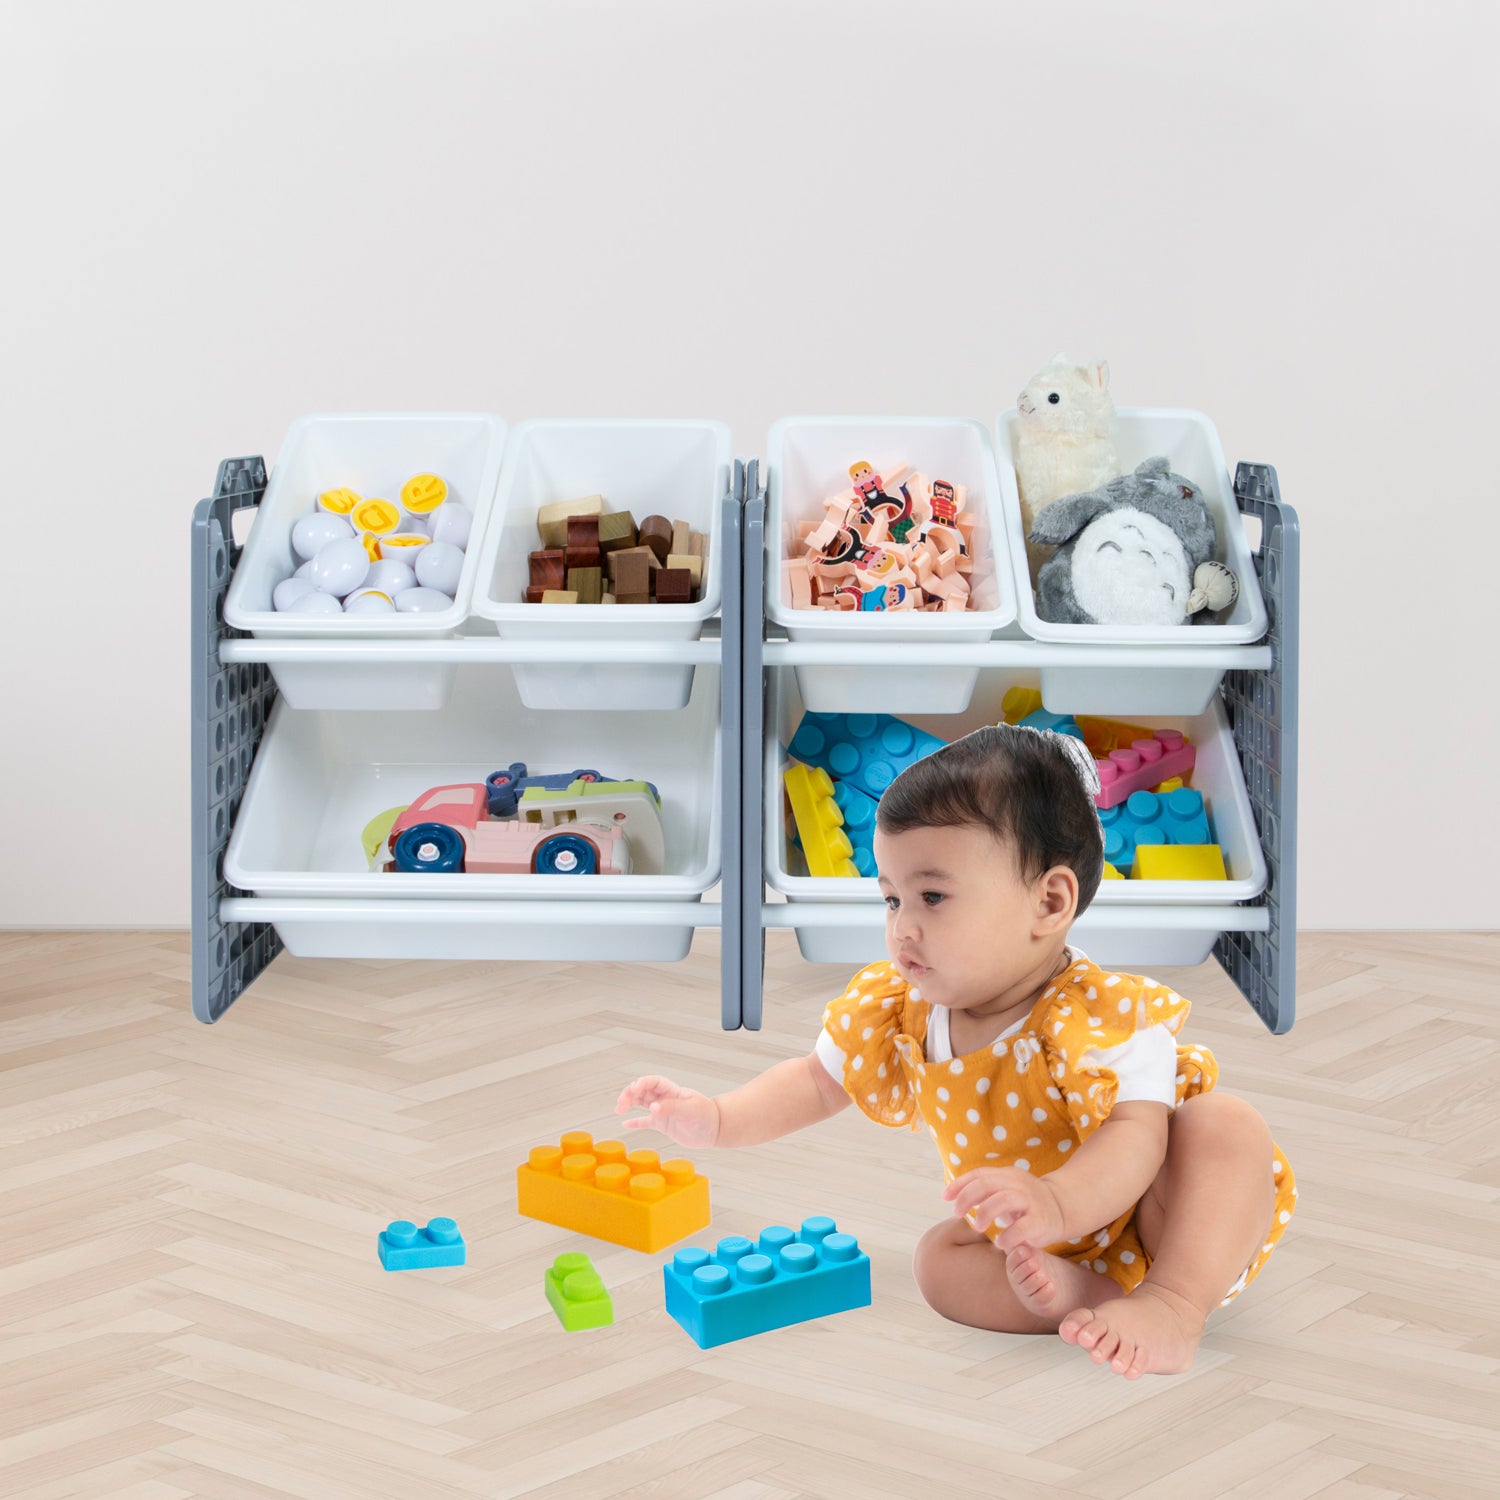 UNiPLAY 6 Bins Toy Storage Organizer - Gray (UB45512)